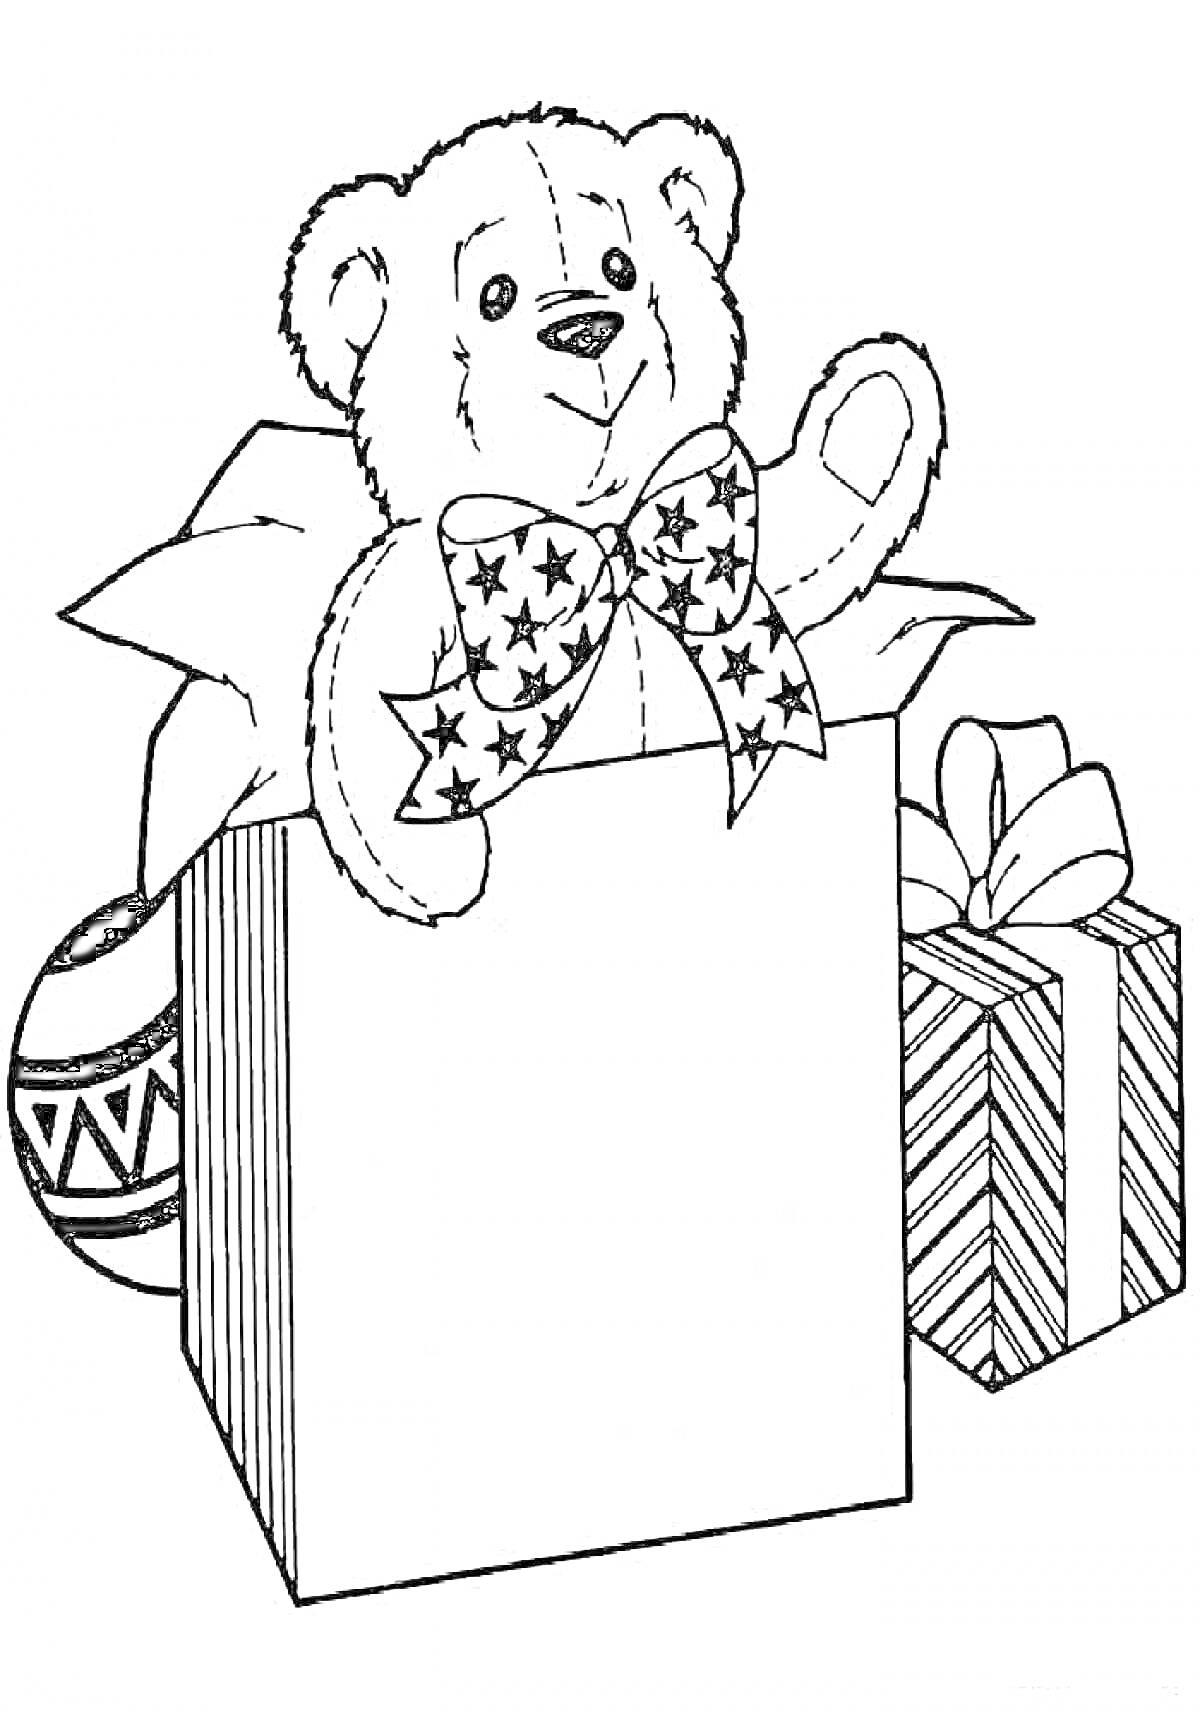 Мишка Тедди в подарочной коробке с бантом, шар с узорами и завернутый подарок с бантом